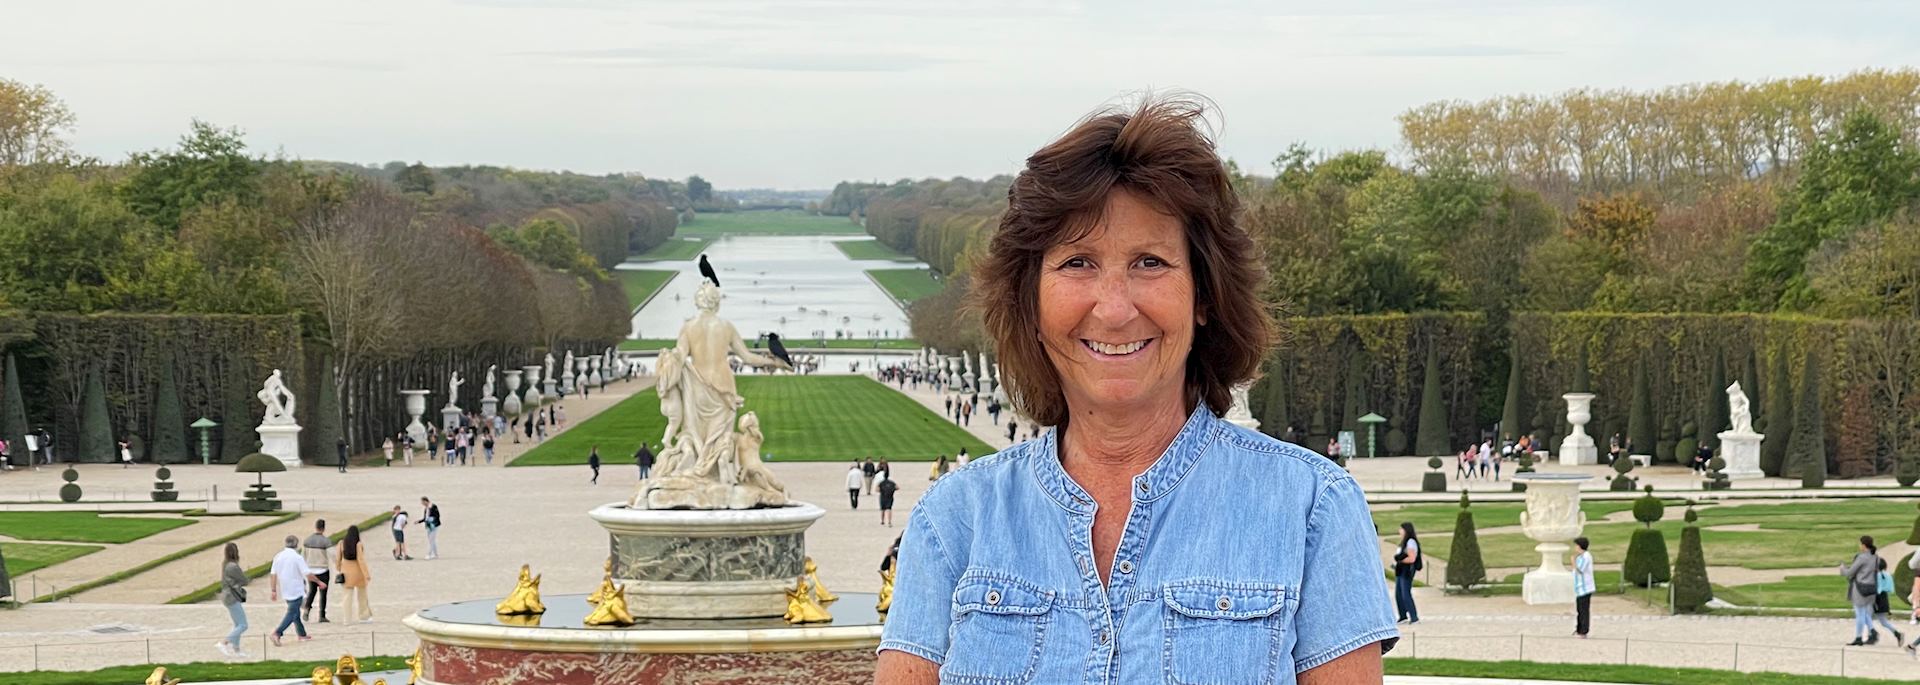 Lisa visiting Versailles, France